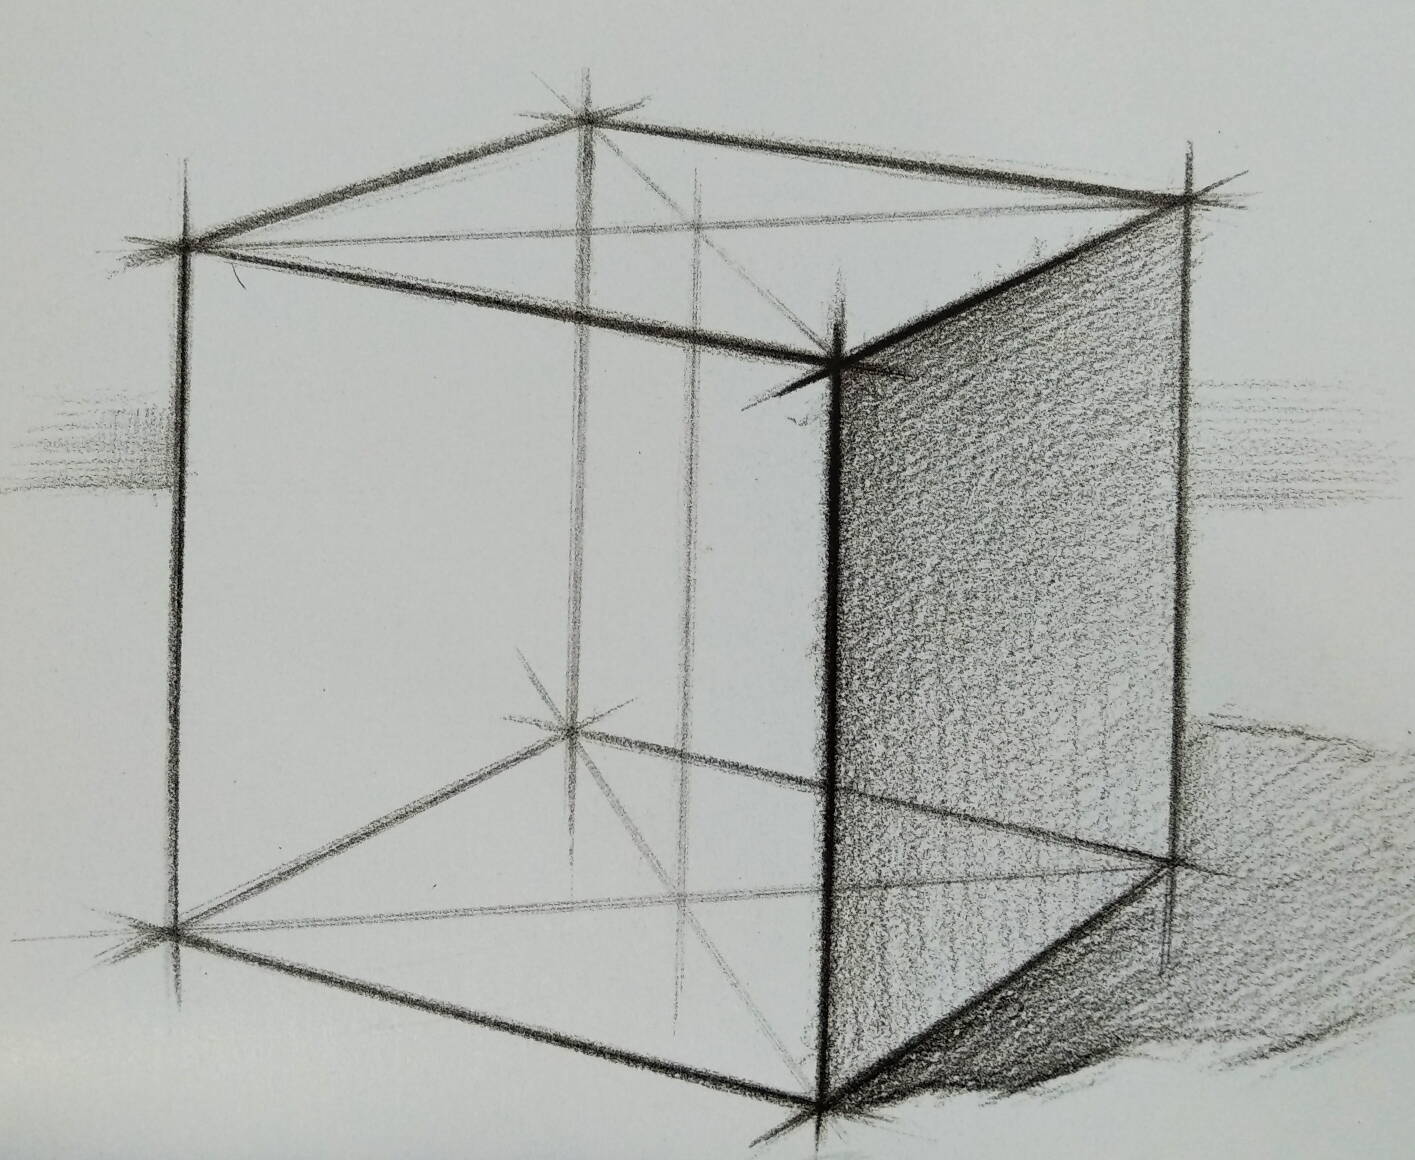 素描正方形透视结构图图片